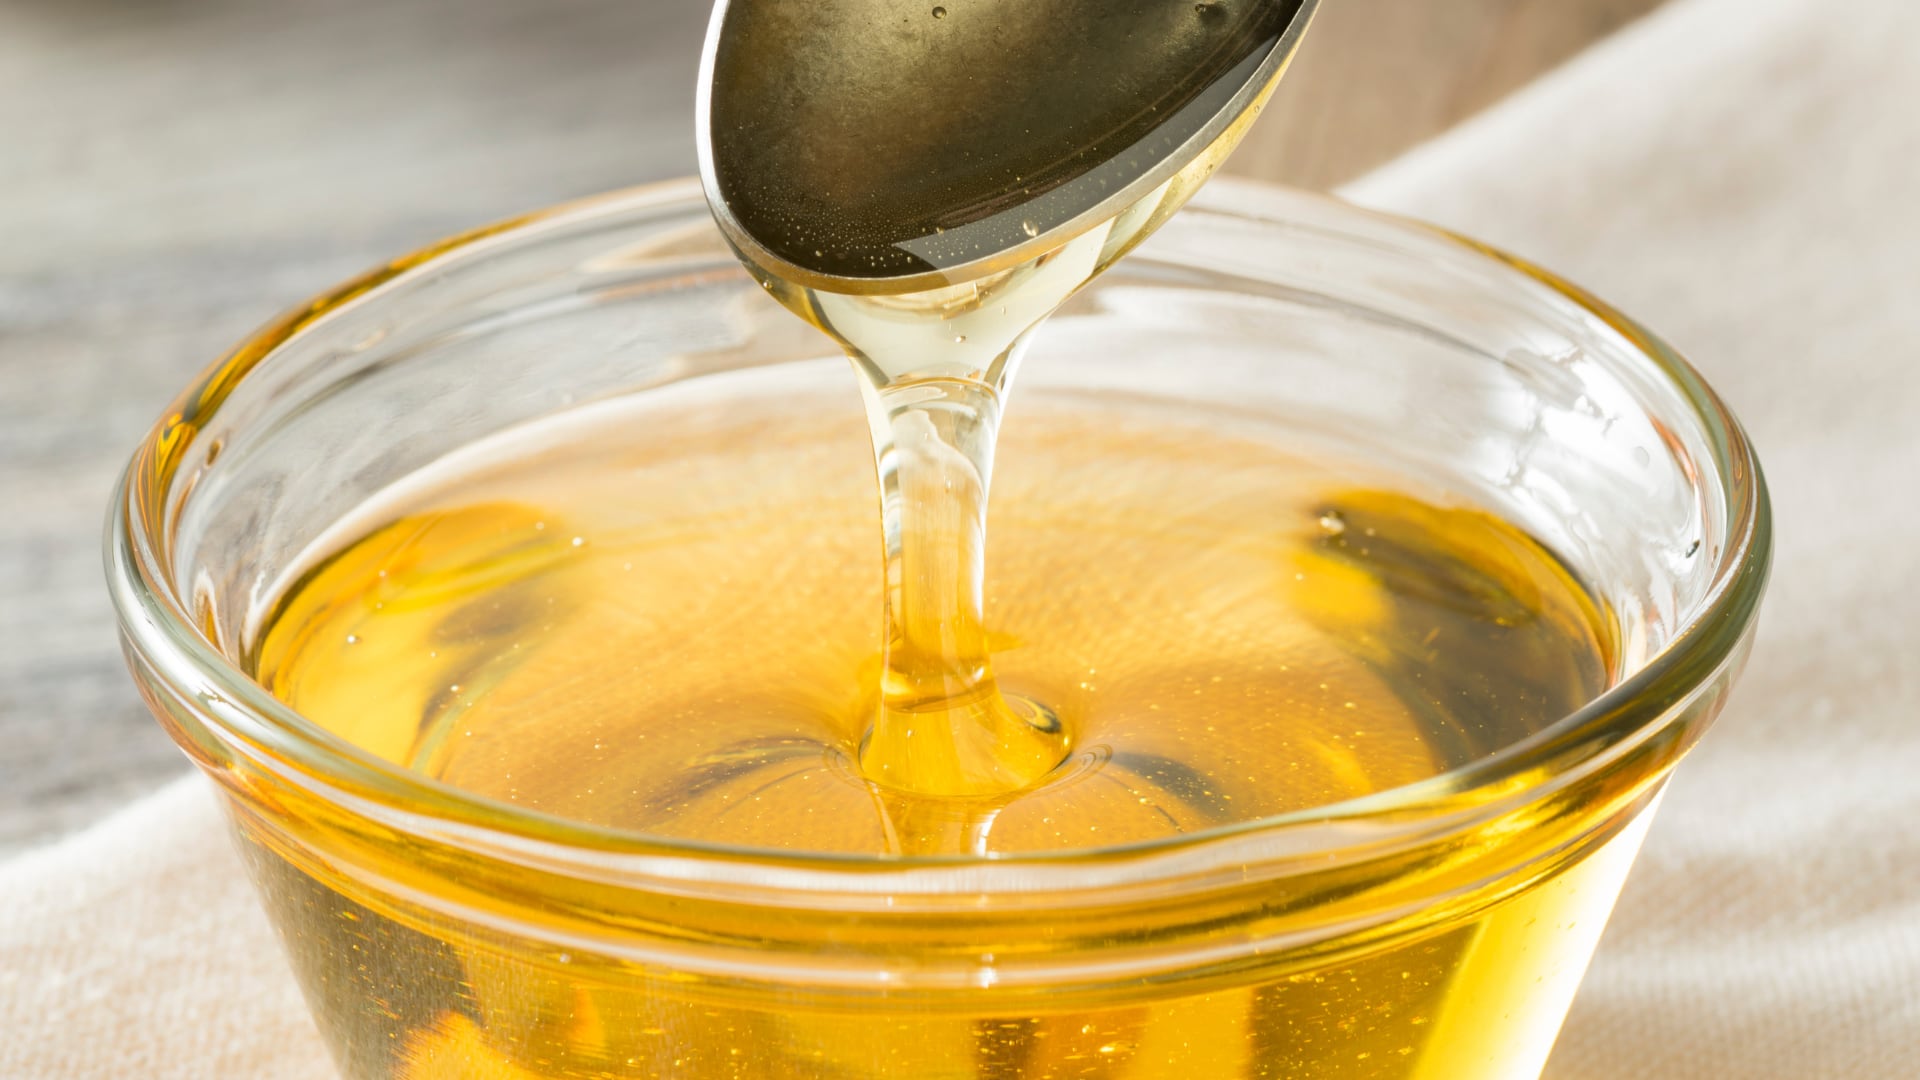 Algunas marcas pueden diluir la miel de agave con otros edulcorantes o aditivos, por lo que es importante leer las etiquetas y buscar opciones de alta calidad.